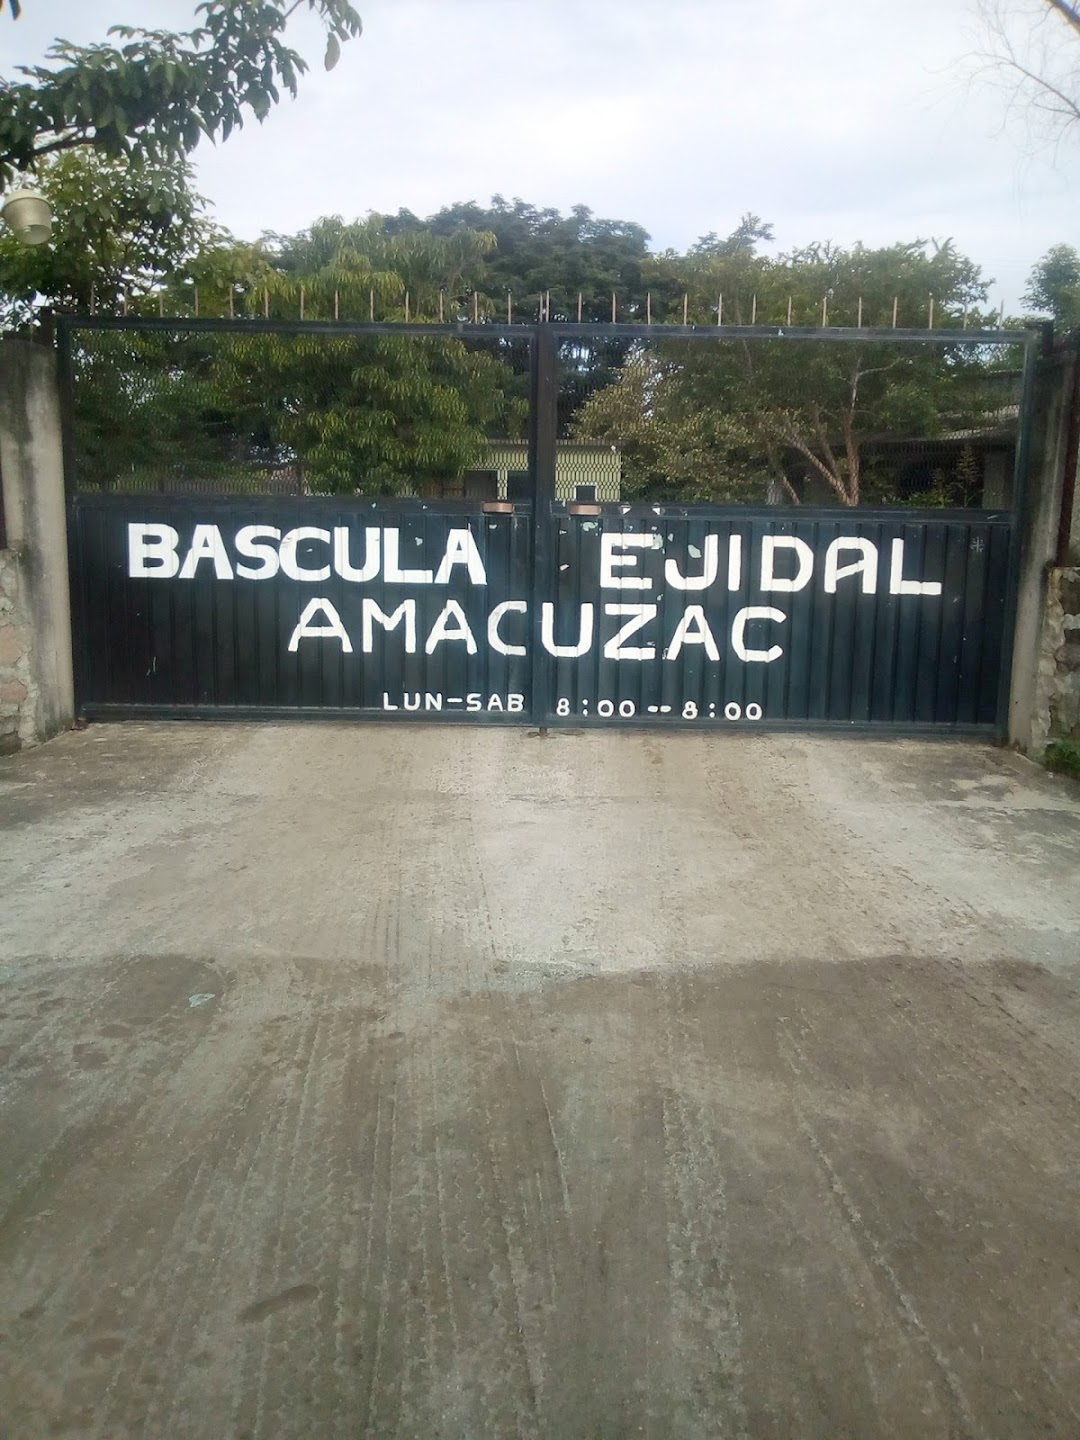 Bascula Ejidal Amacuzac